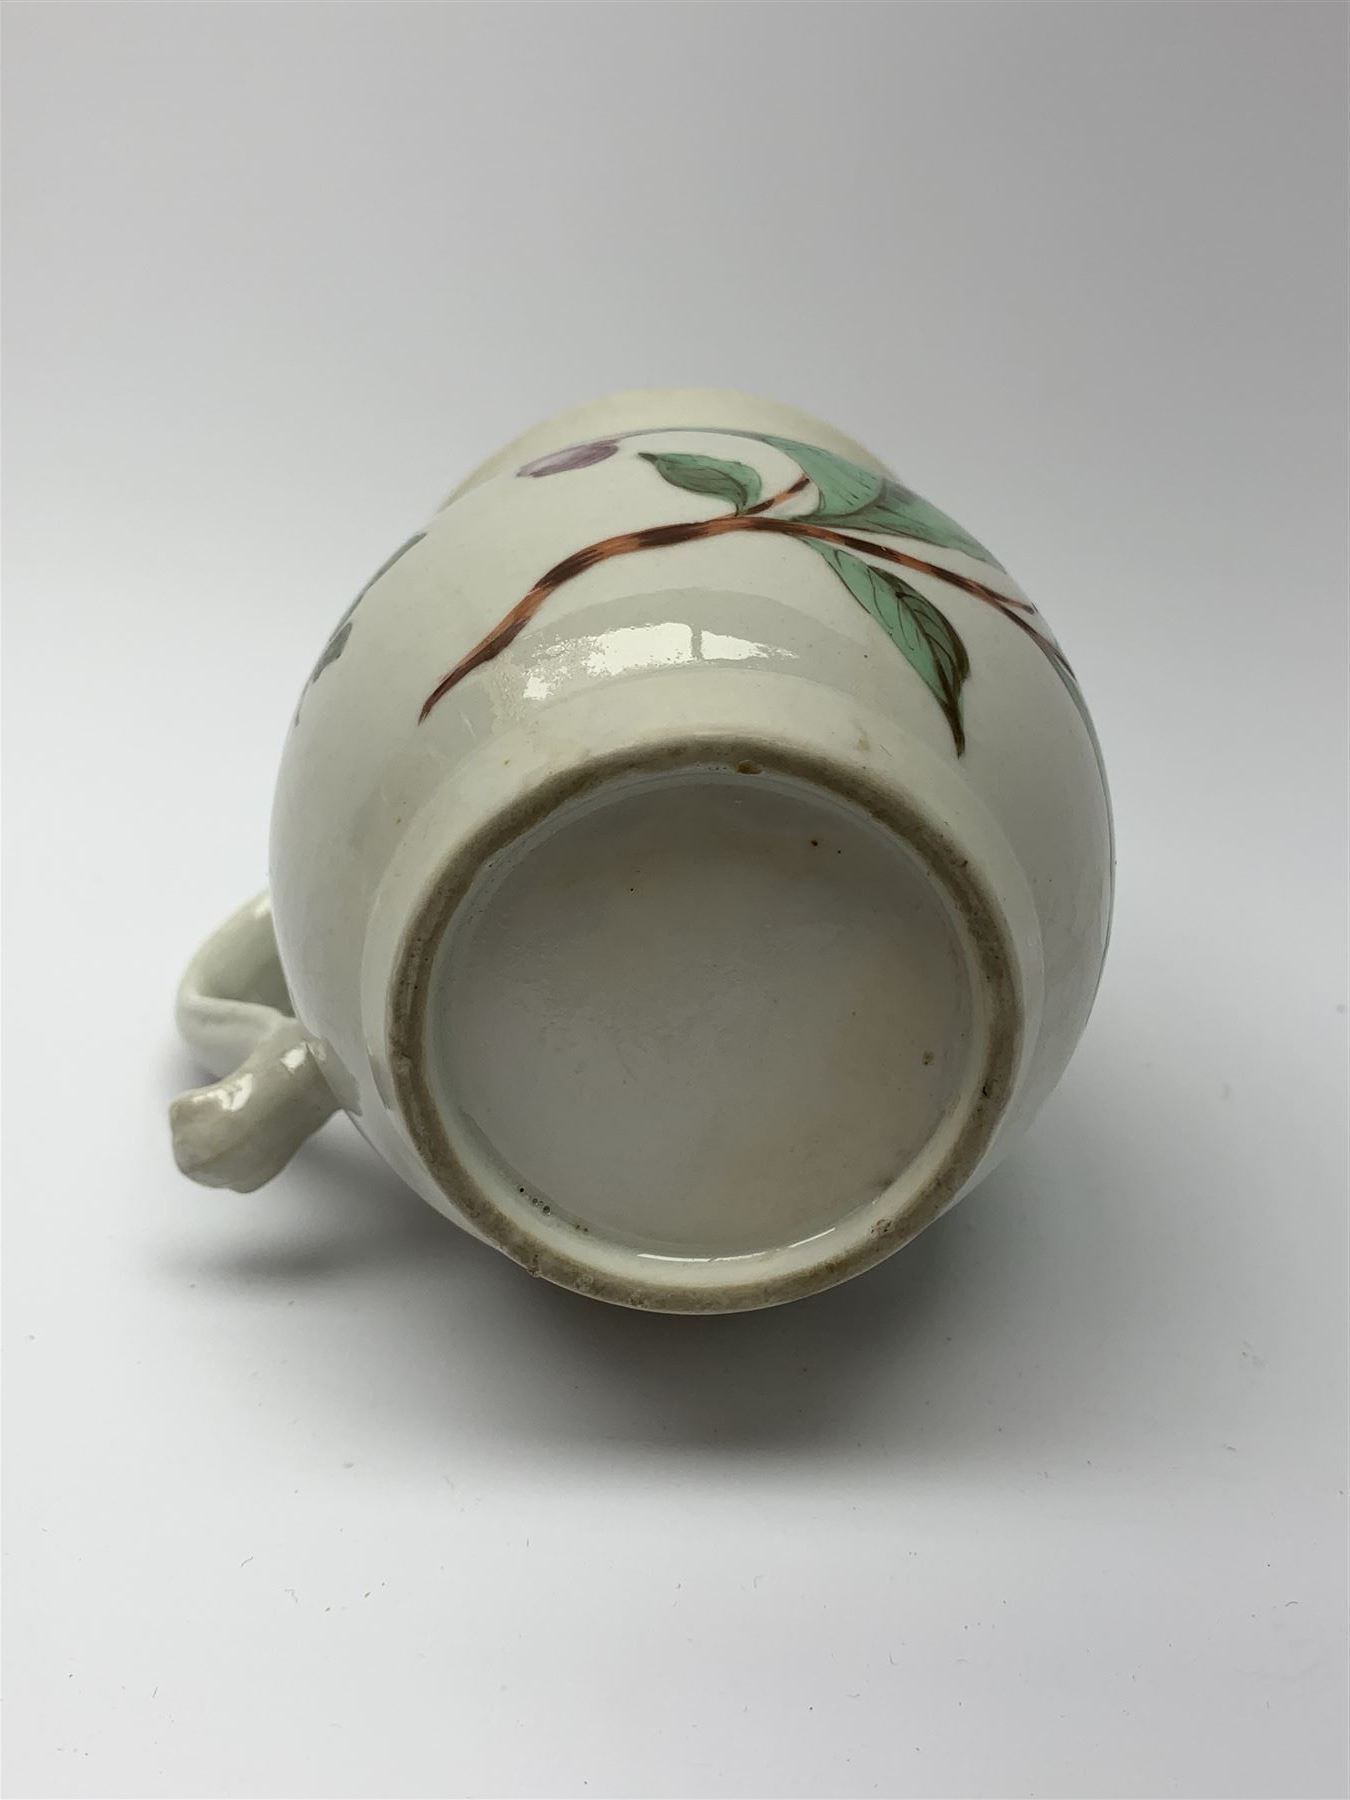 18th century porcelain mug - Image 8 of 8